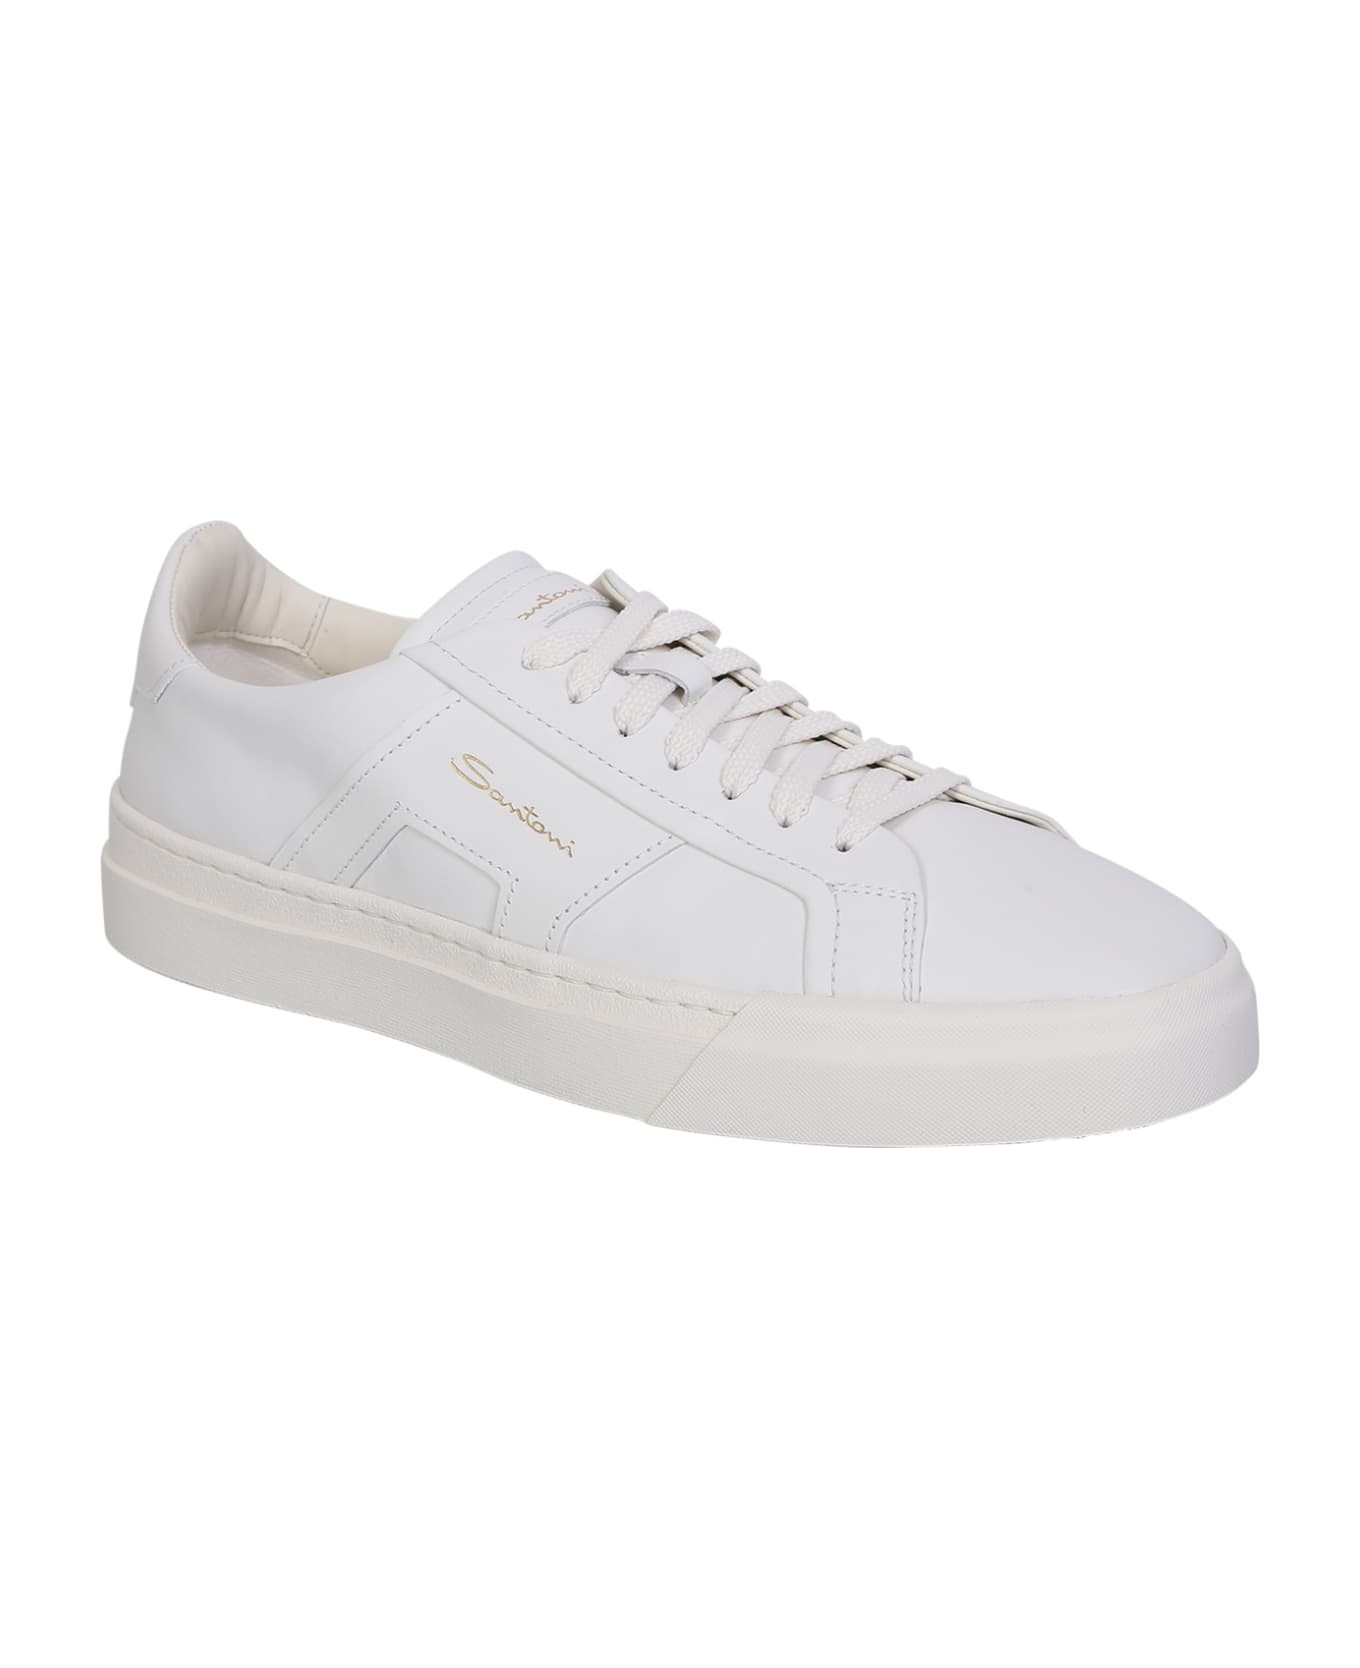 Santoni Sneakers Dbs - White